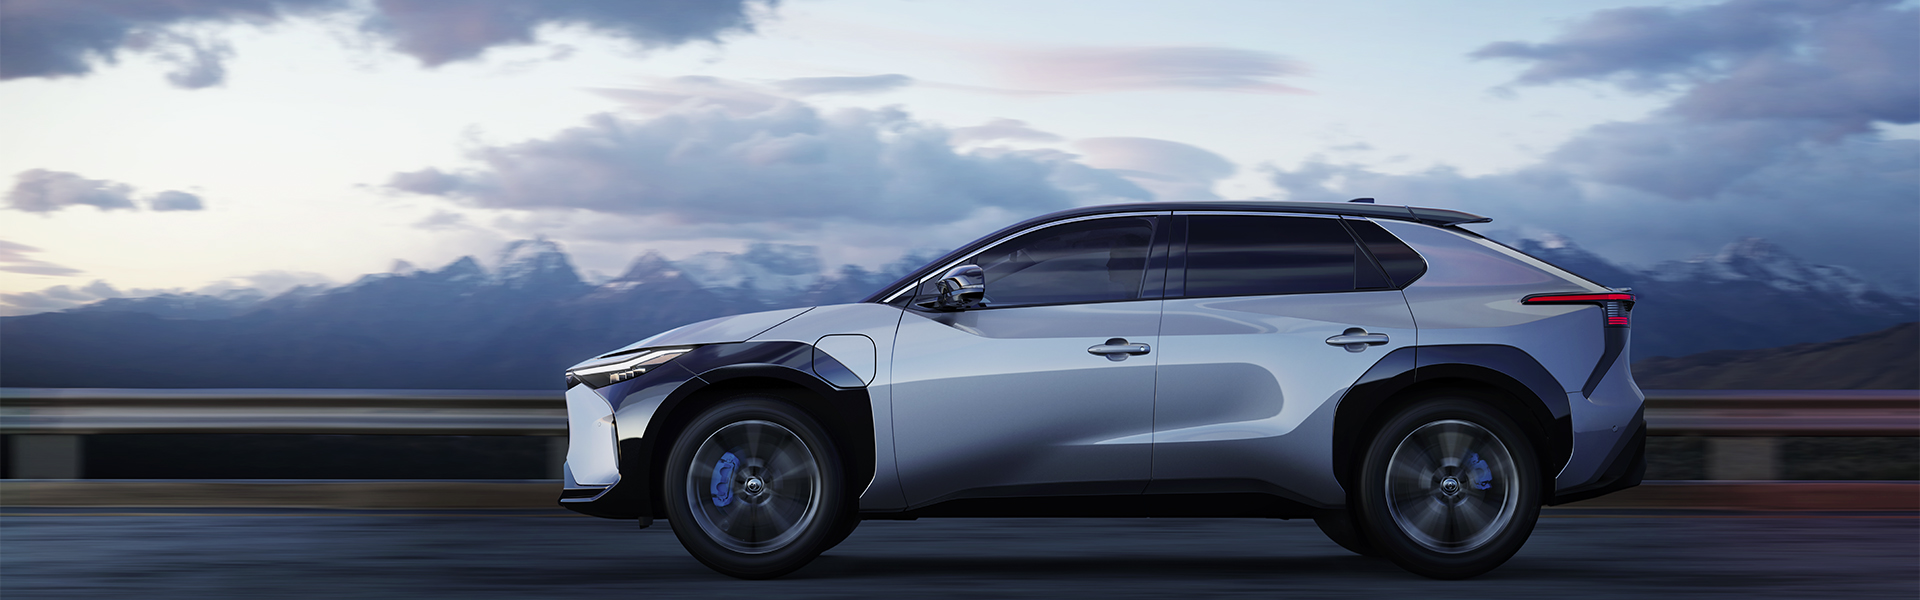 トヨタ、電動車のフルラインアップ化の一環として新EVシリーズ「TOYOTA bZ」を発表